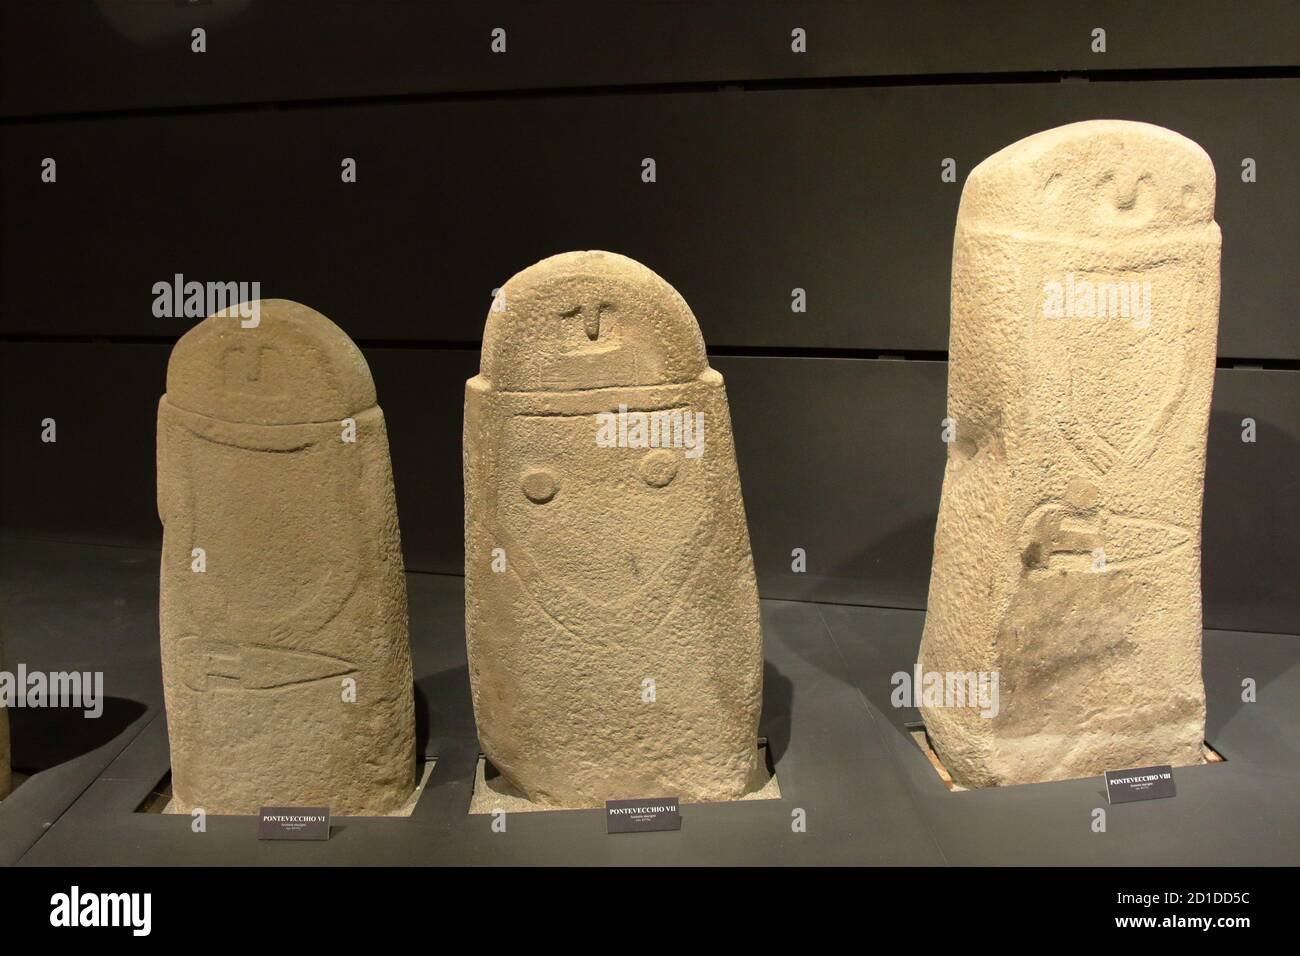 Museo Arqueológico, la Spezia, Italia - verano 2020: Edad de piedra dolmen antropomórfico Foto de stock